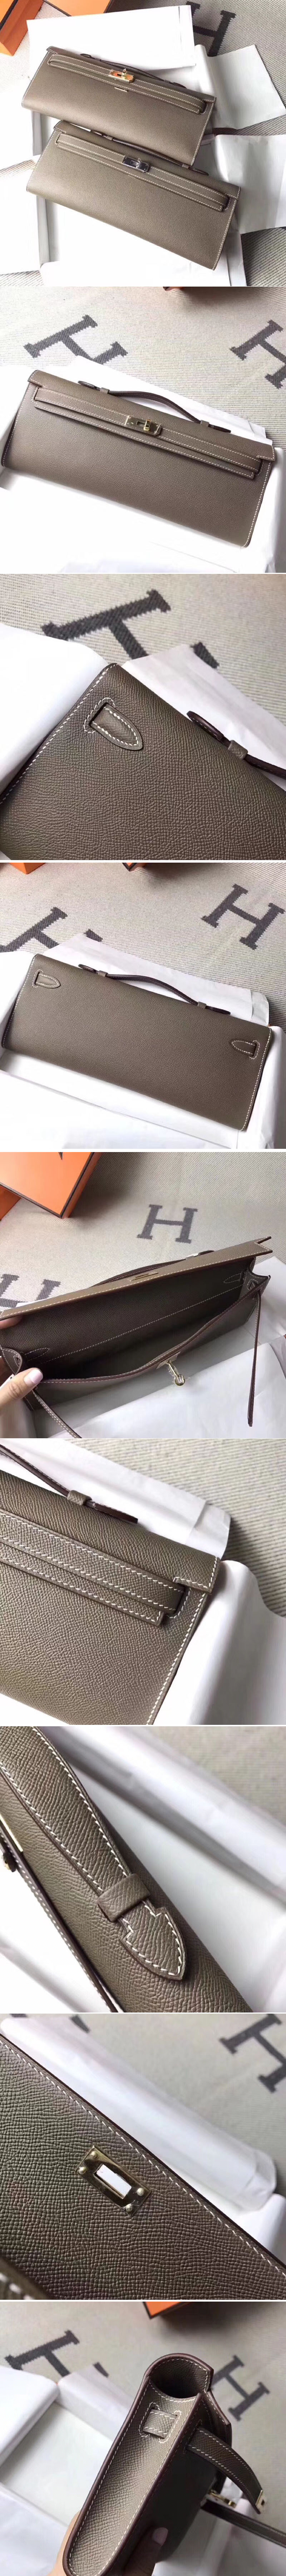 Replica Hermes Bags